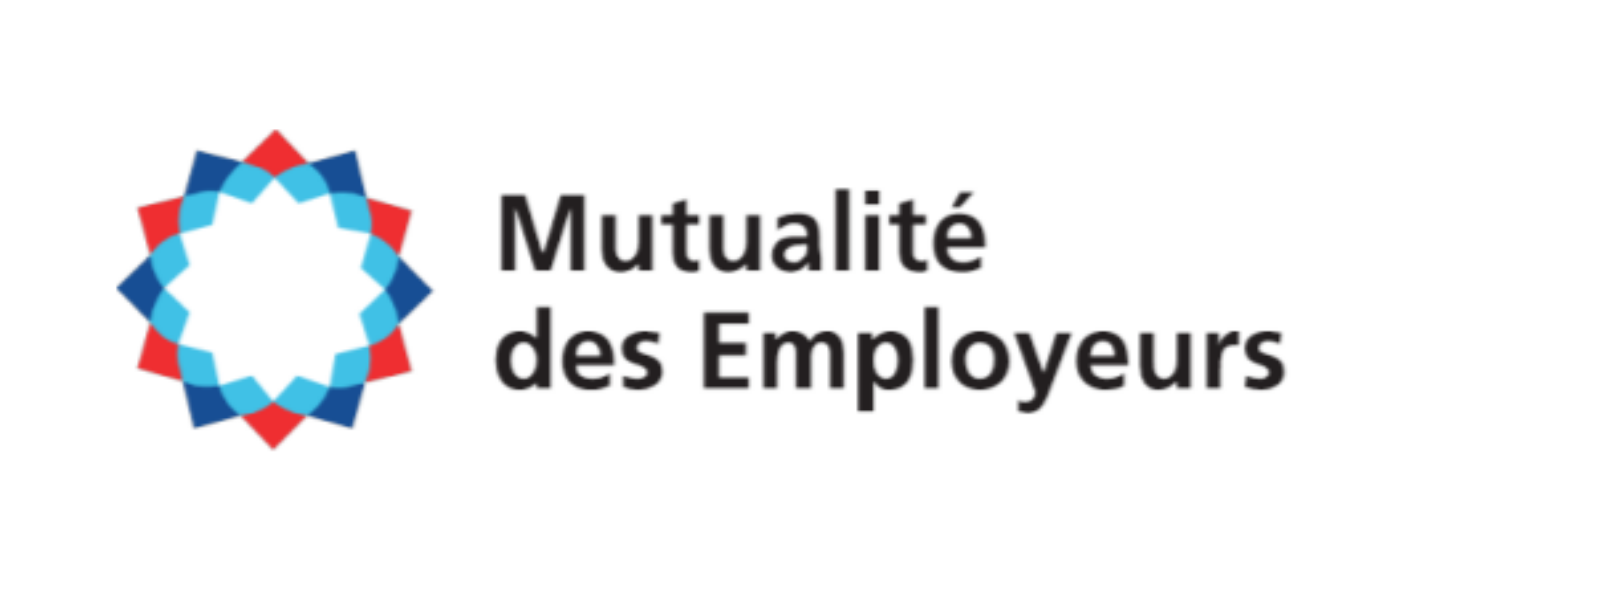 Mutualité des Employeurs: Höhere Beiträge für 2022